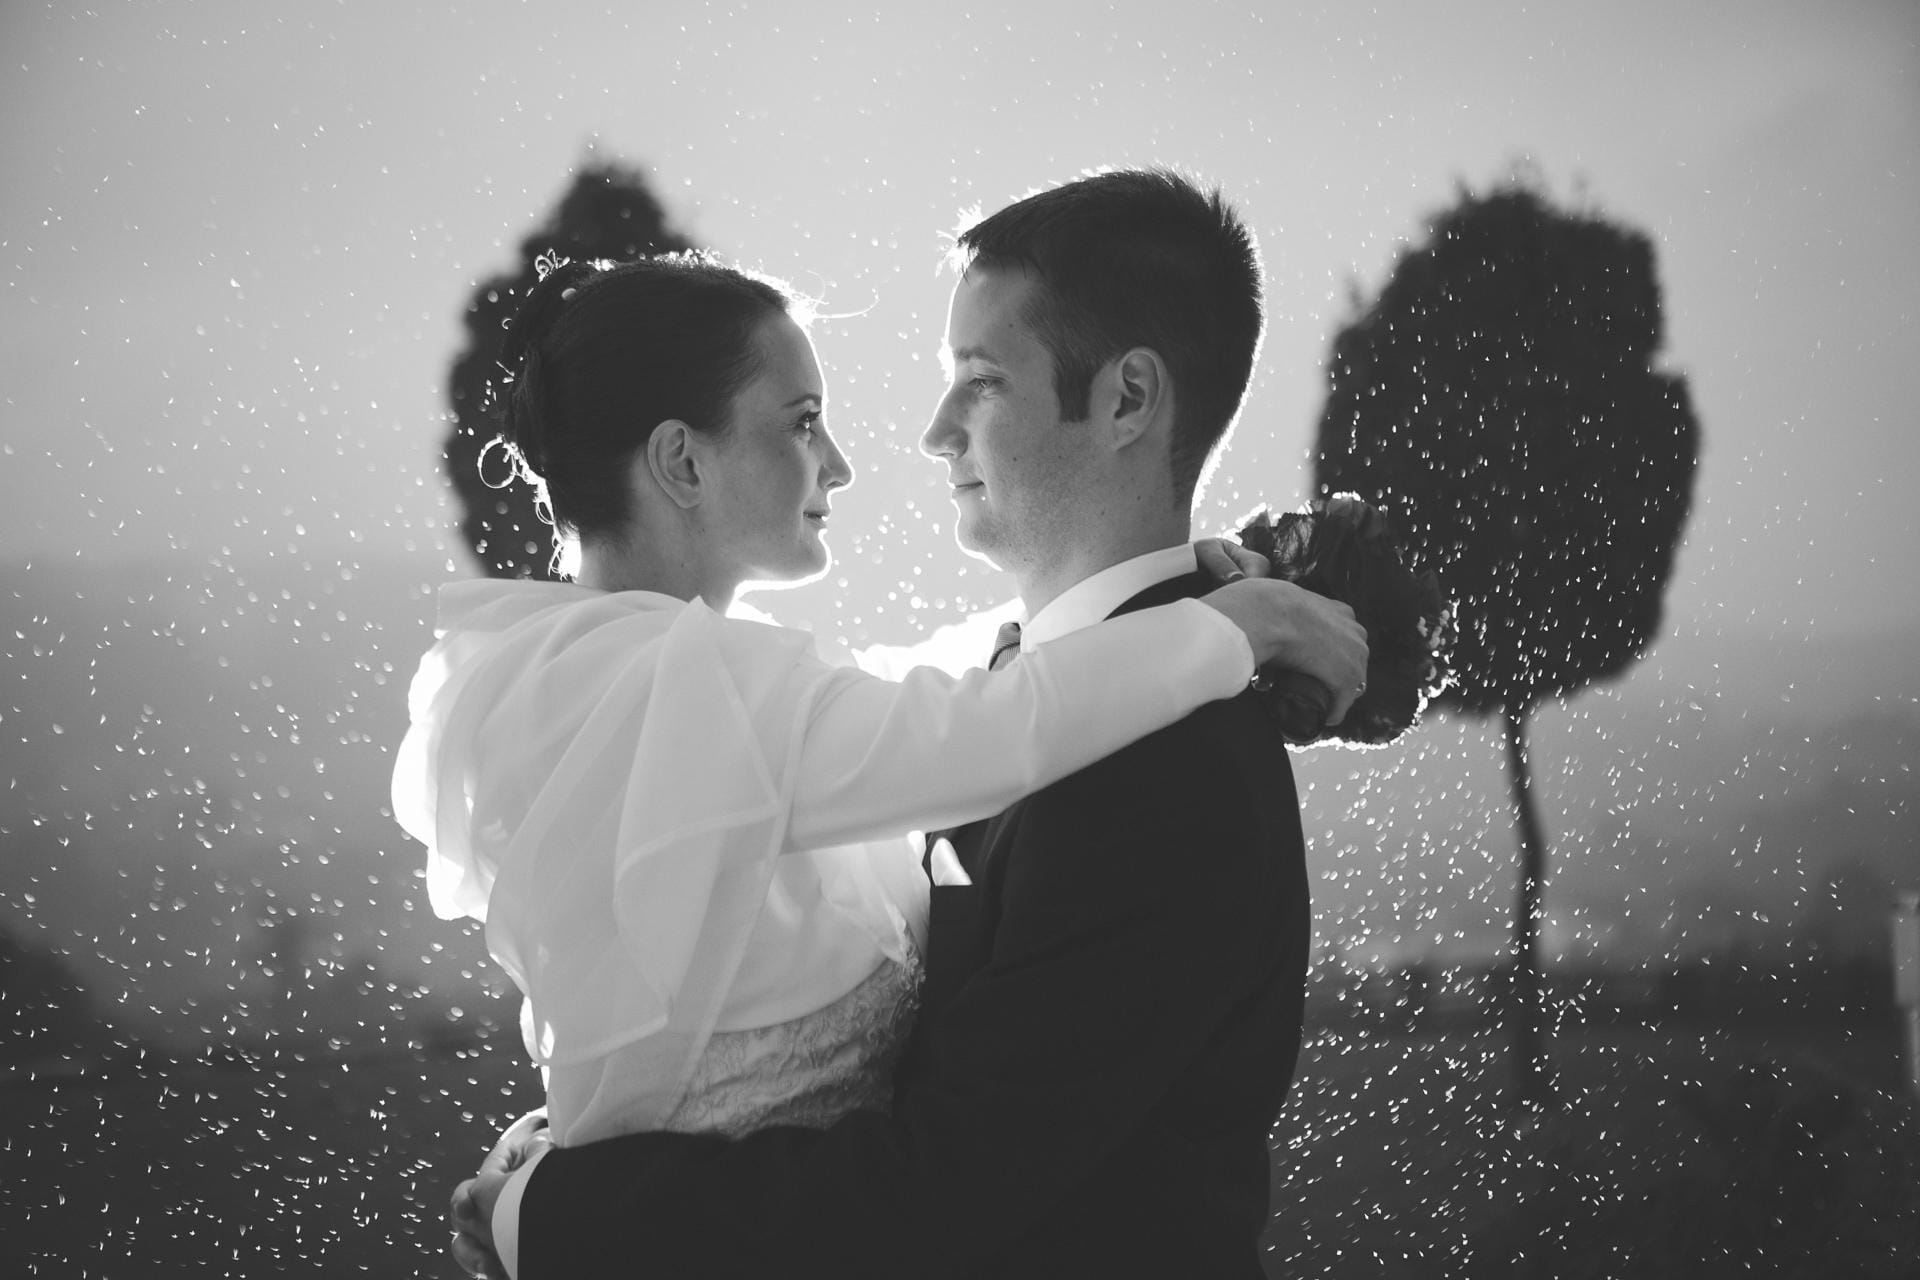 Ko soparen poročni dan popestri, nevihta in misliš, da bo ta uničila celotno poročno fotografiranje. Potem pa se začne jasniti in pojavi se da narediš ene najboljših poročnih fotografij.